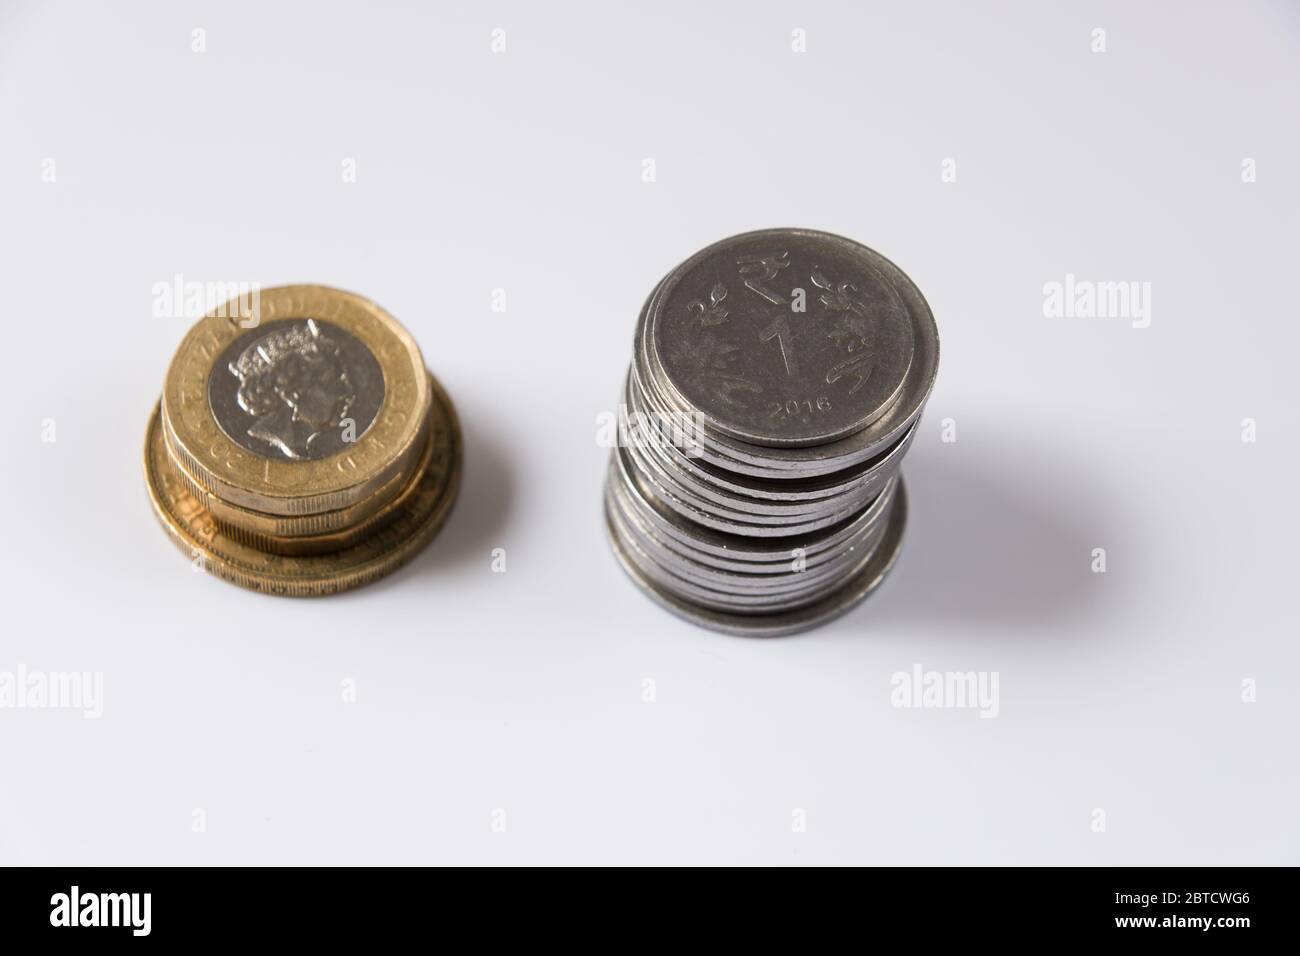 Monete inglesi e rupia indiana accatastate su sfondo bianco Foto Stock